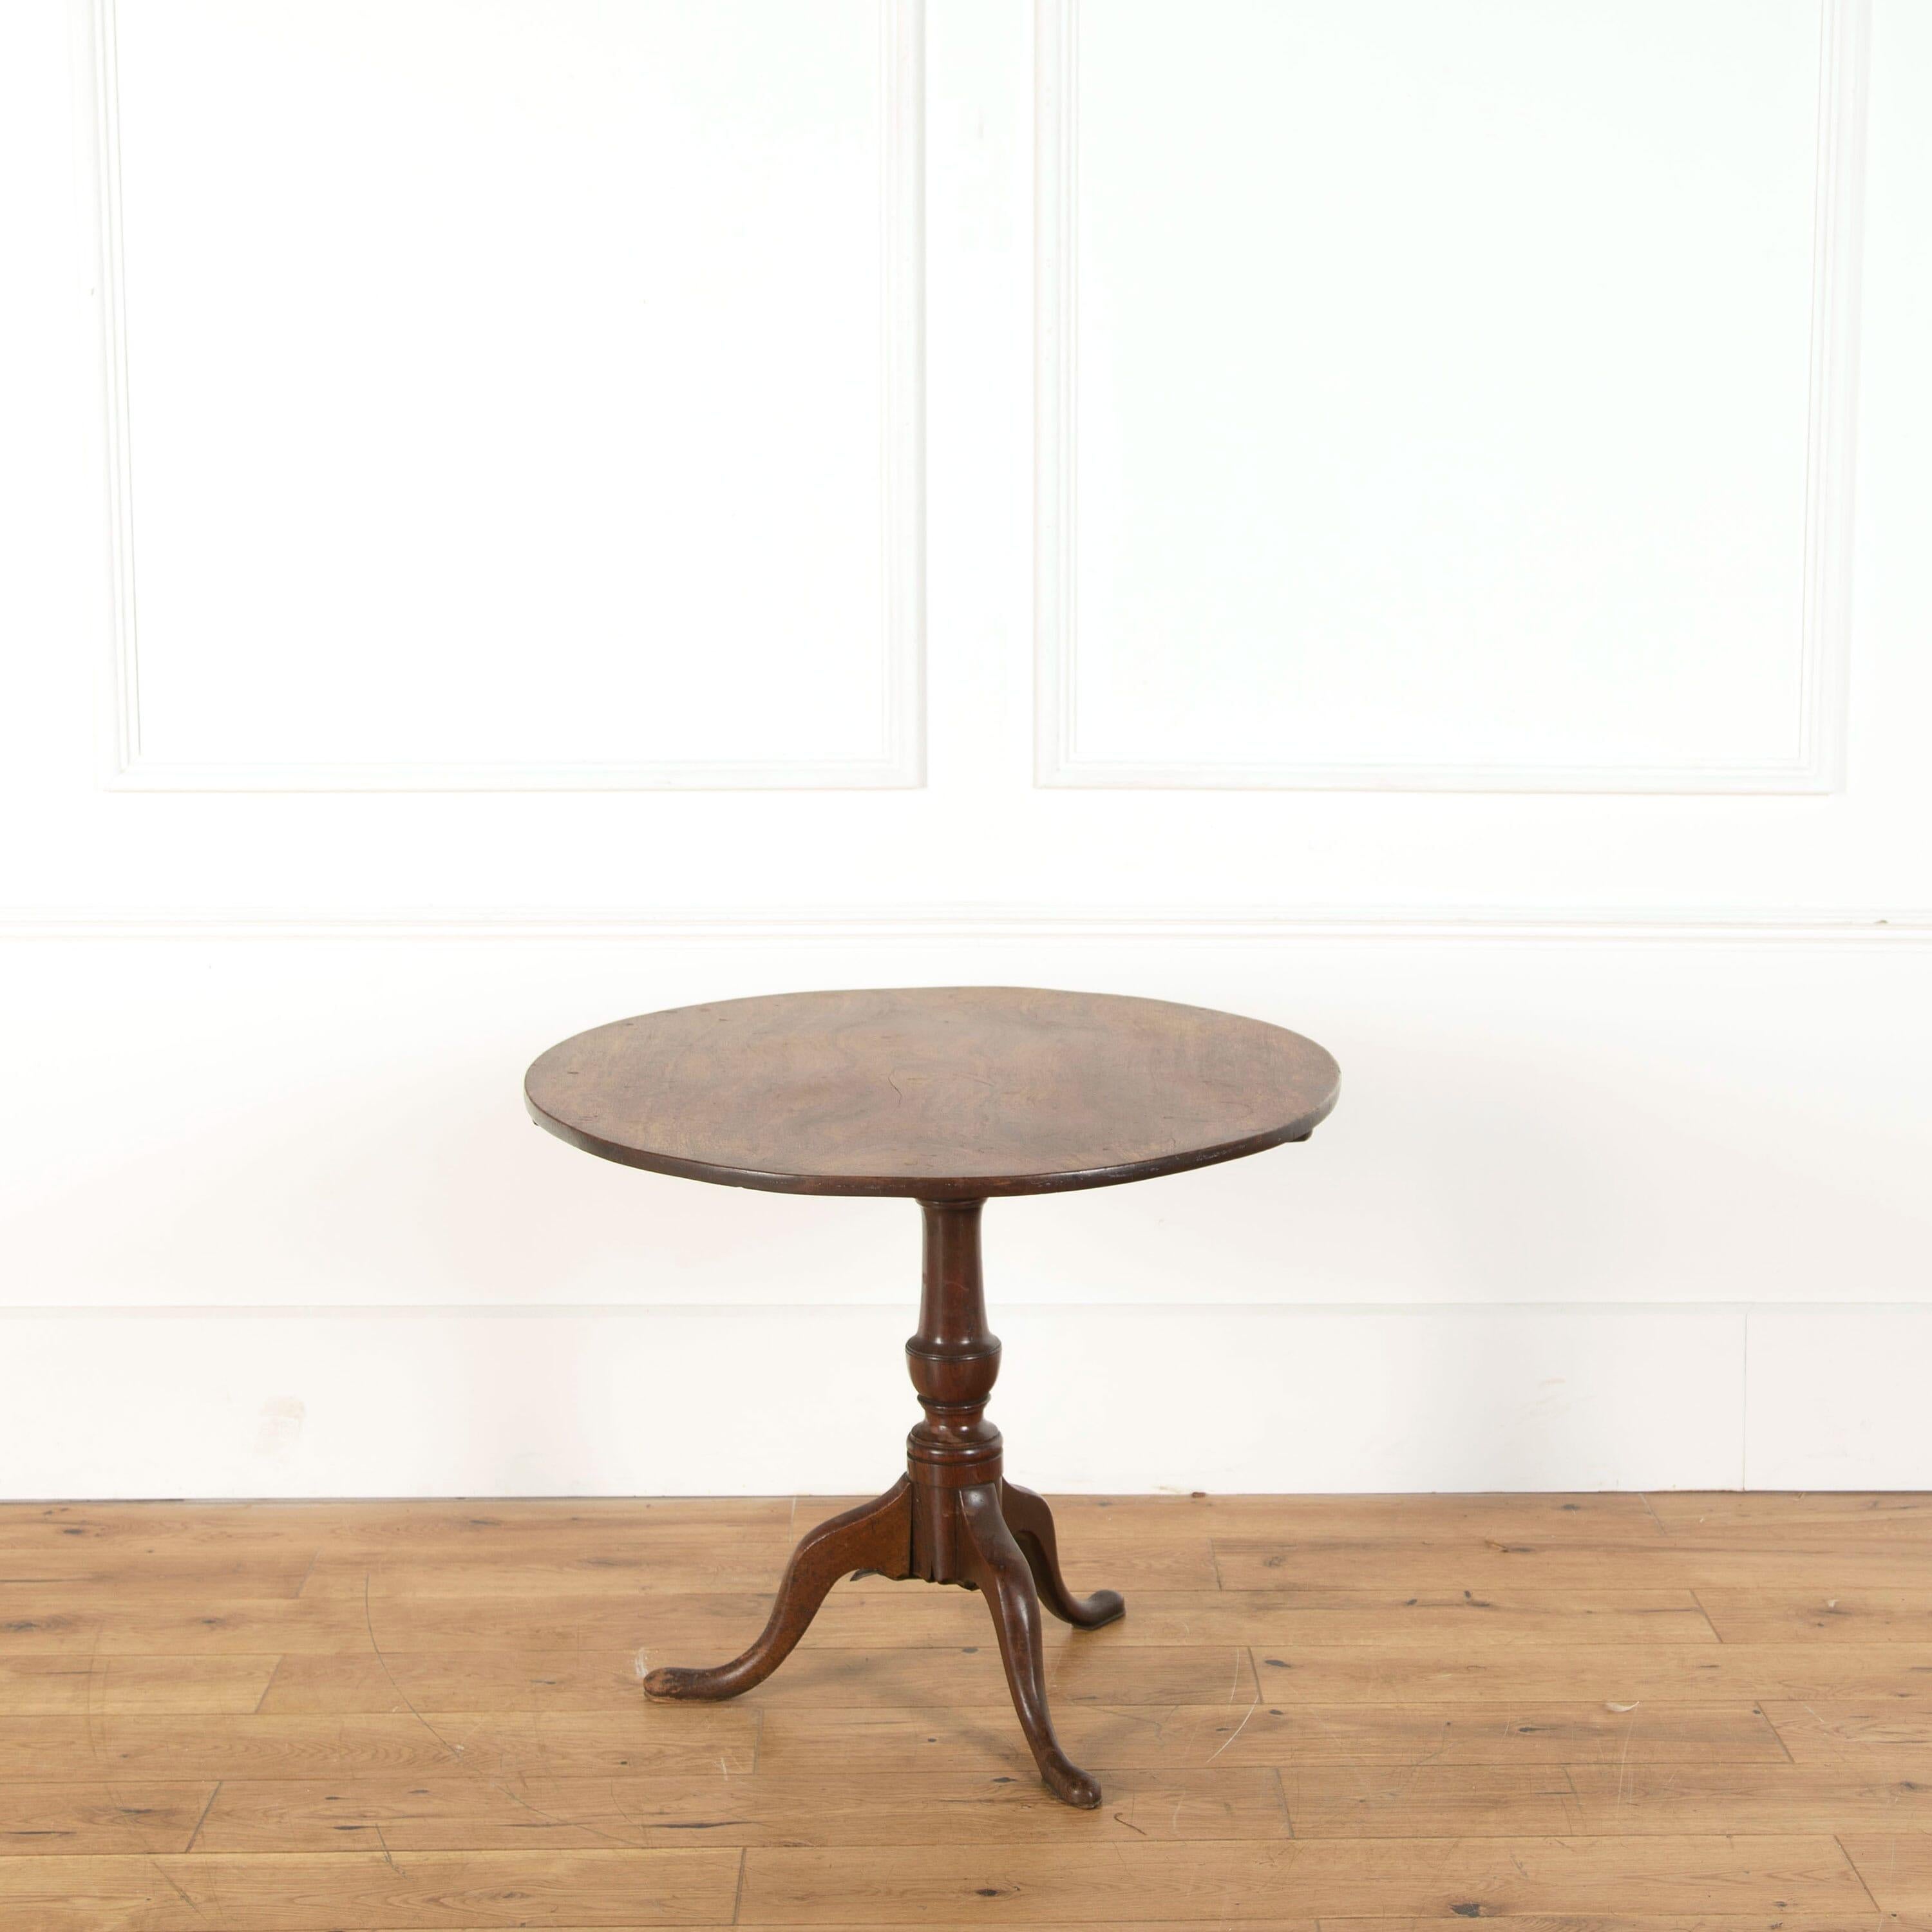 English 18th century mahogany tripod table.